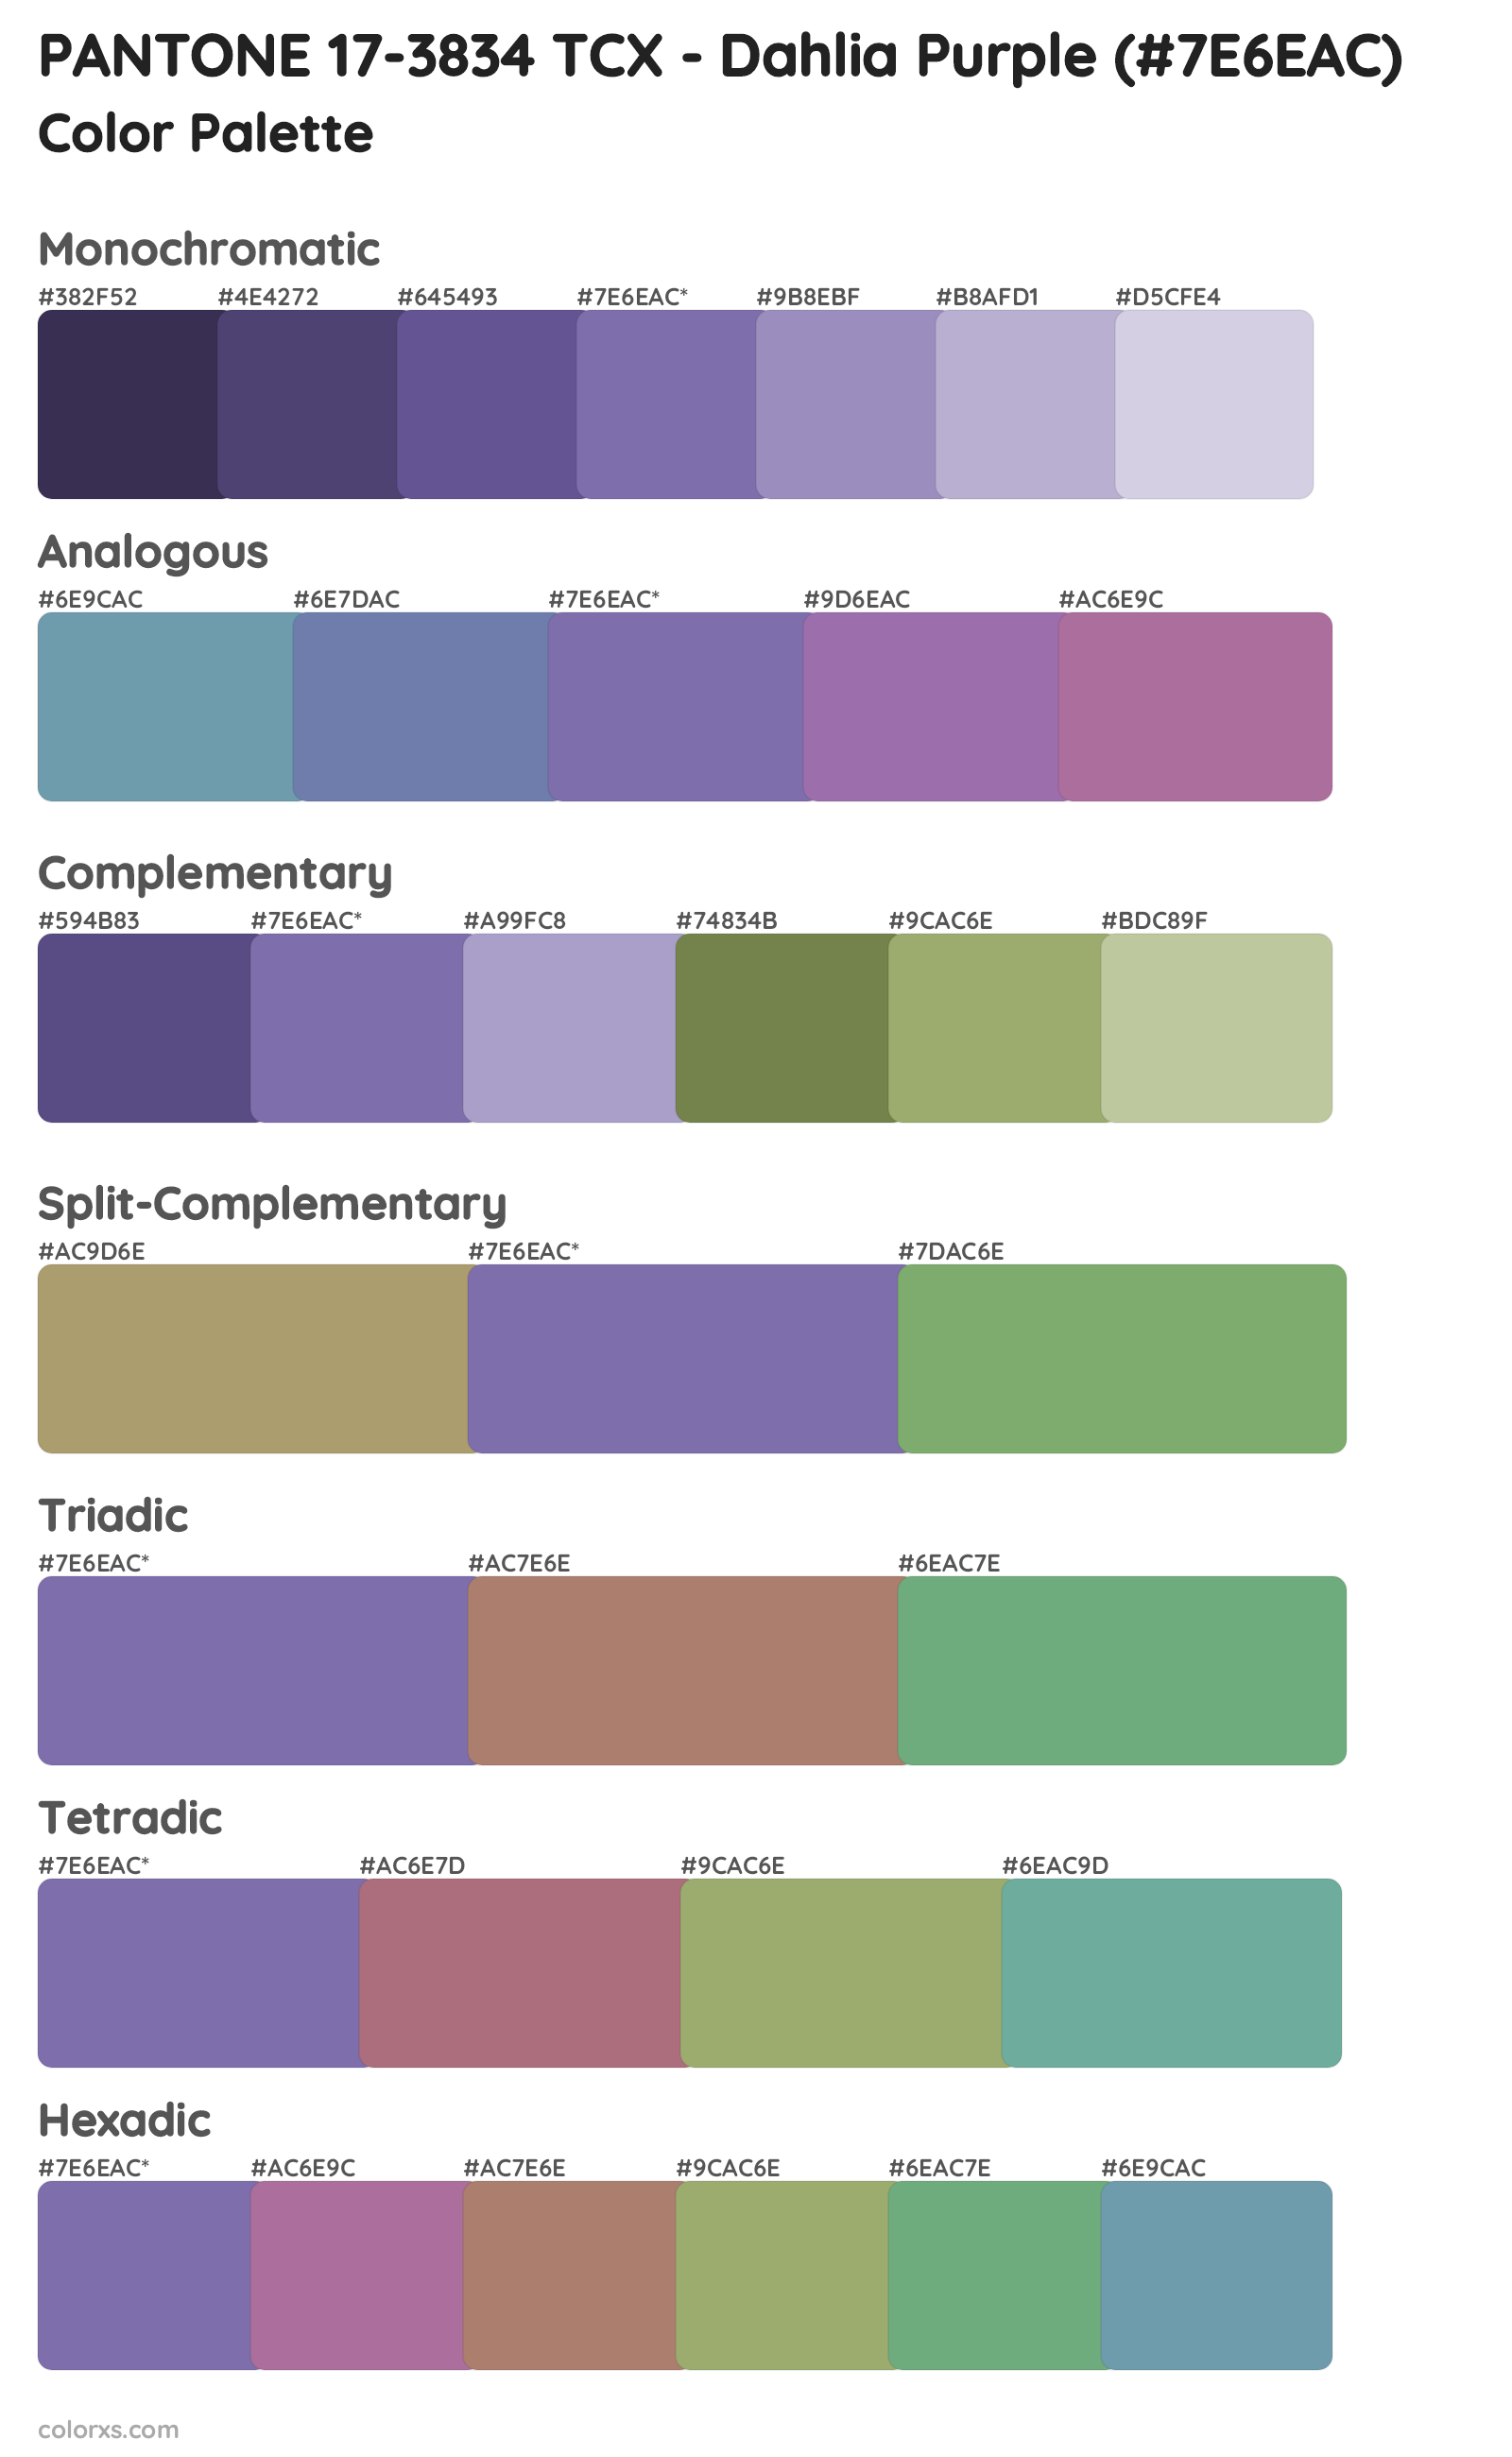 PANTONE 17-3834 TCX - Dahlia Purple Color Scheme Palettes